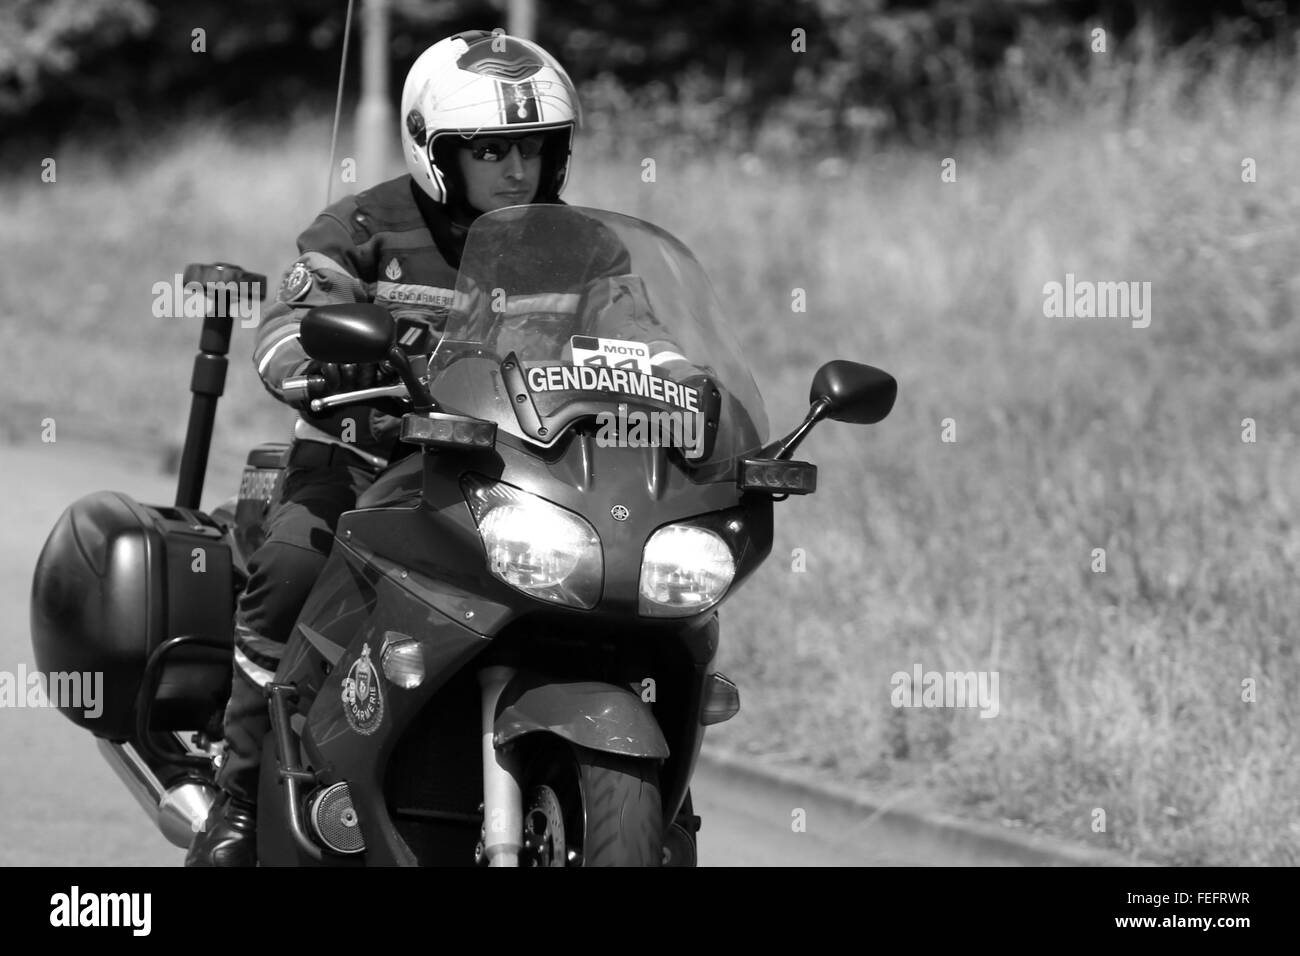 Polizia francese gendarmeria in moto durante il tur de France in un paese di lingua inglese lane in Cambridgeshire. Luglio 2014 Foto Stock